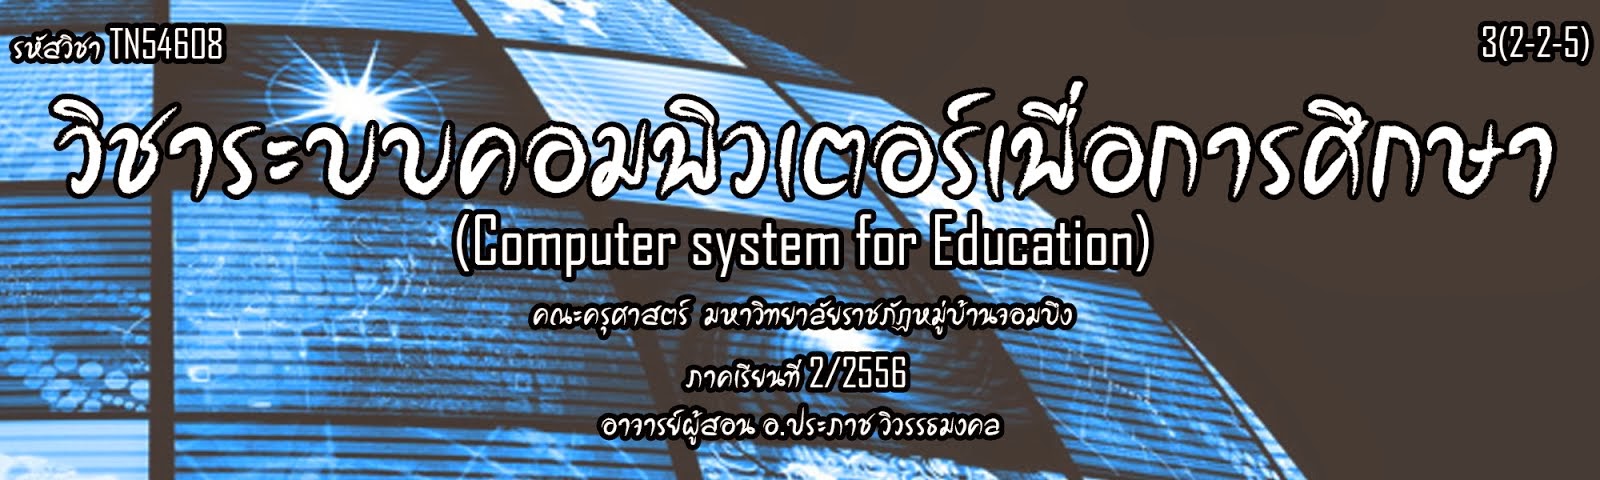 ระบบคอมพิวเตอร์เพื่อการศึกษา